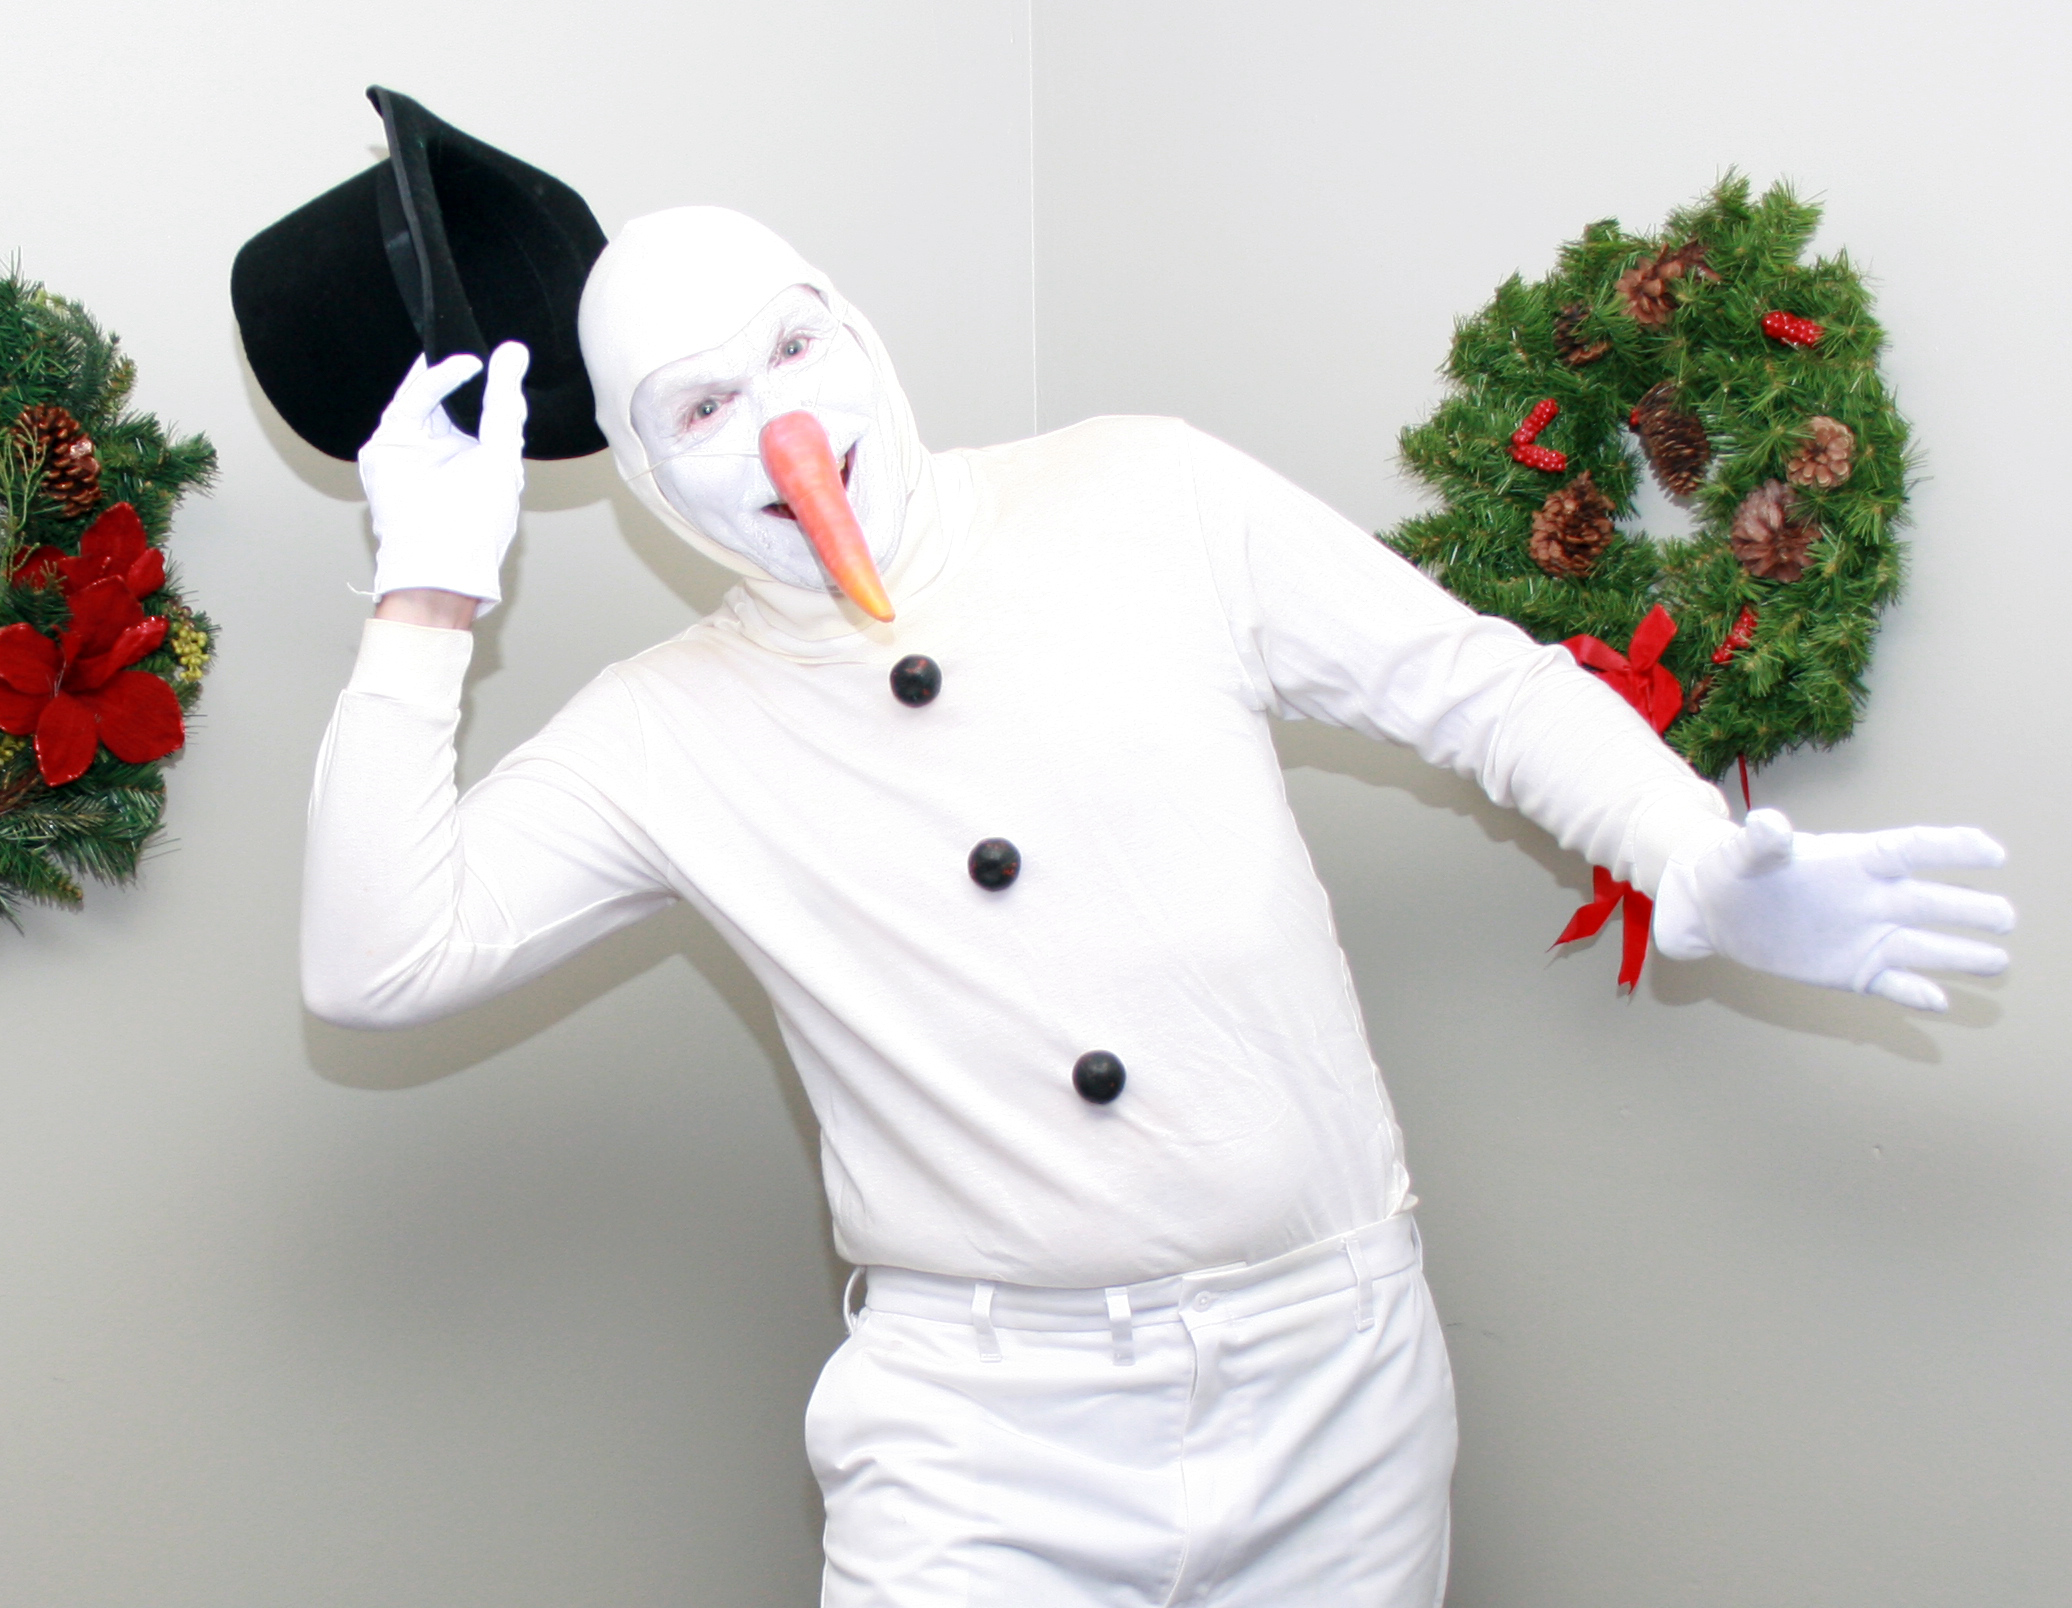 Bert Furioli as Frosty D. Snowman